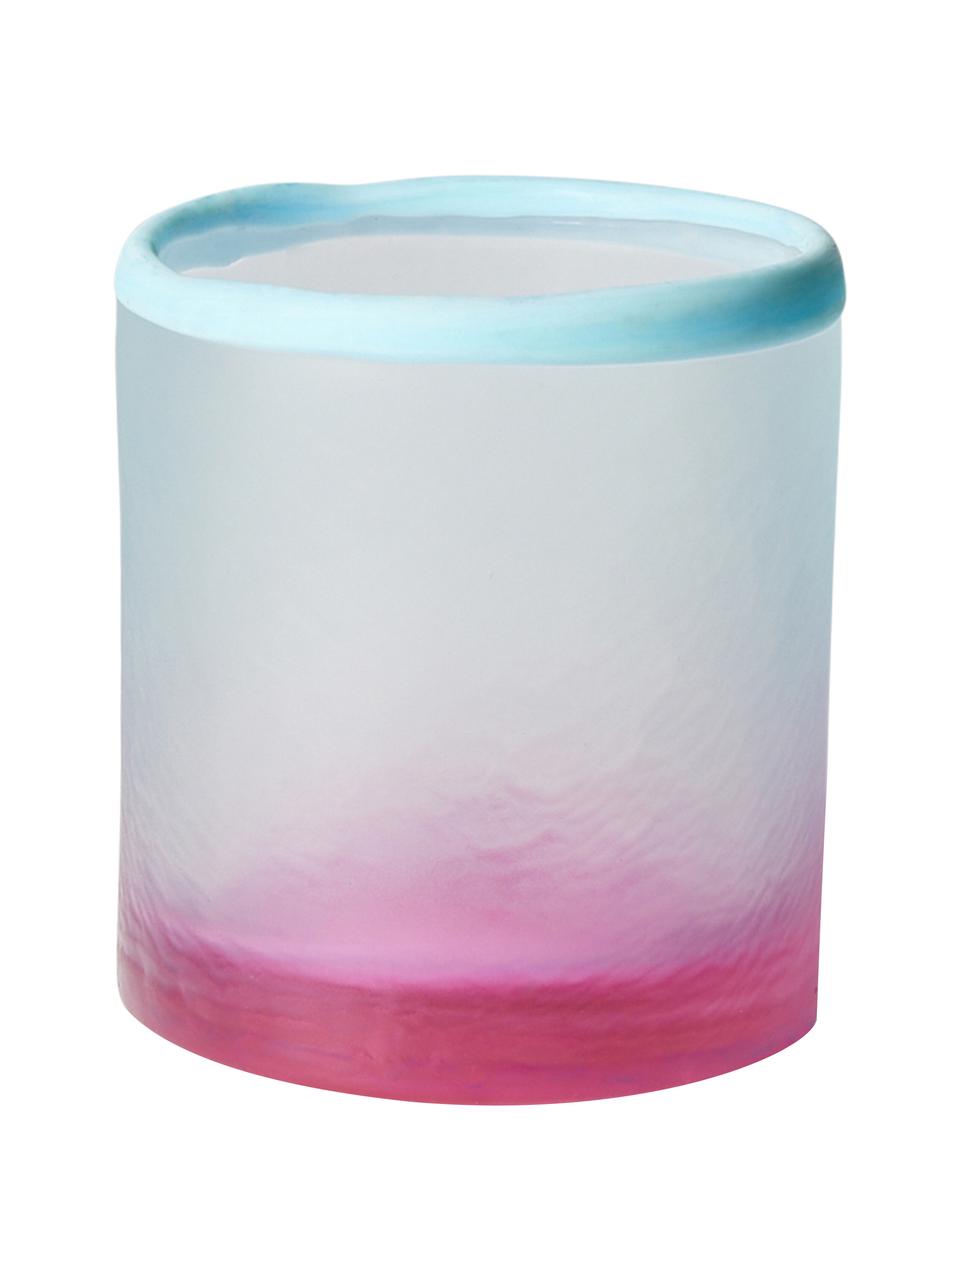 Teelichthalter Pastel, Glas, Blau, Rosa, Ø 9 x H 10 cm